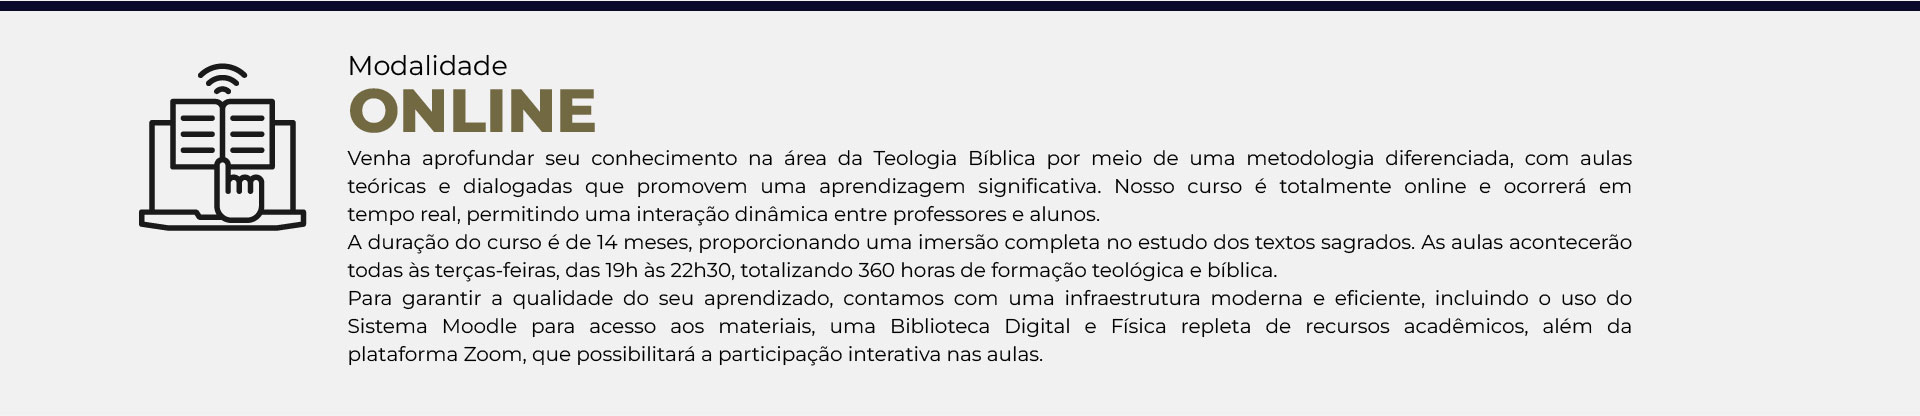 Paginas-Pós-de-Teologia-Bíblica.v1-02.jpg